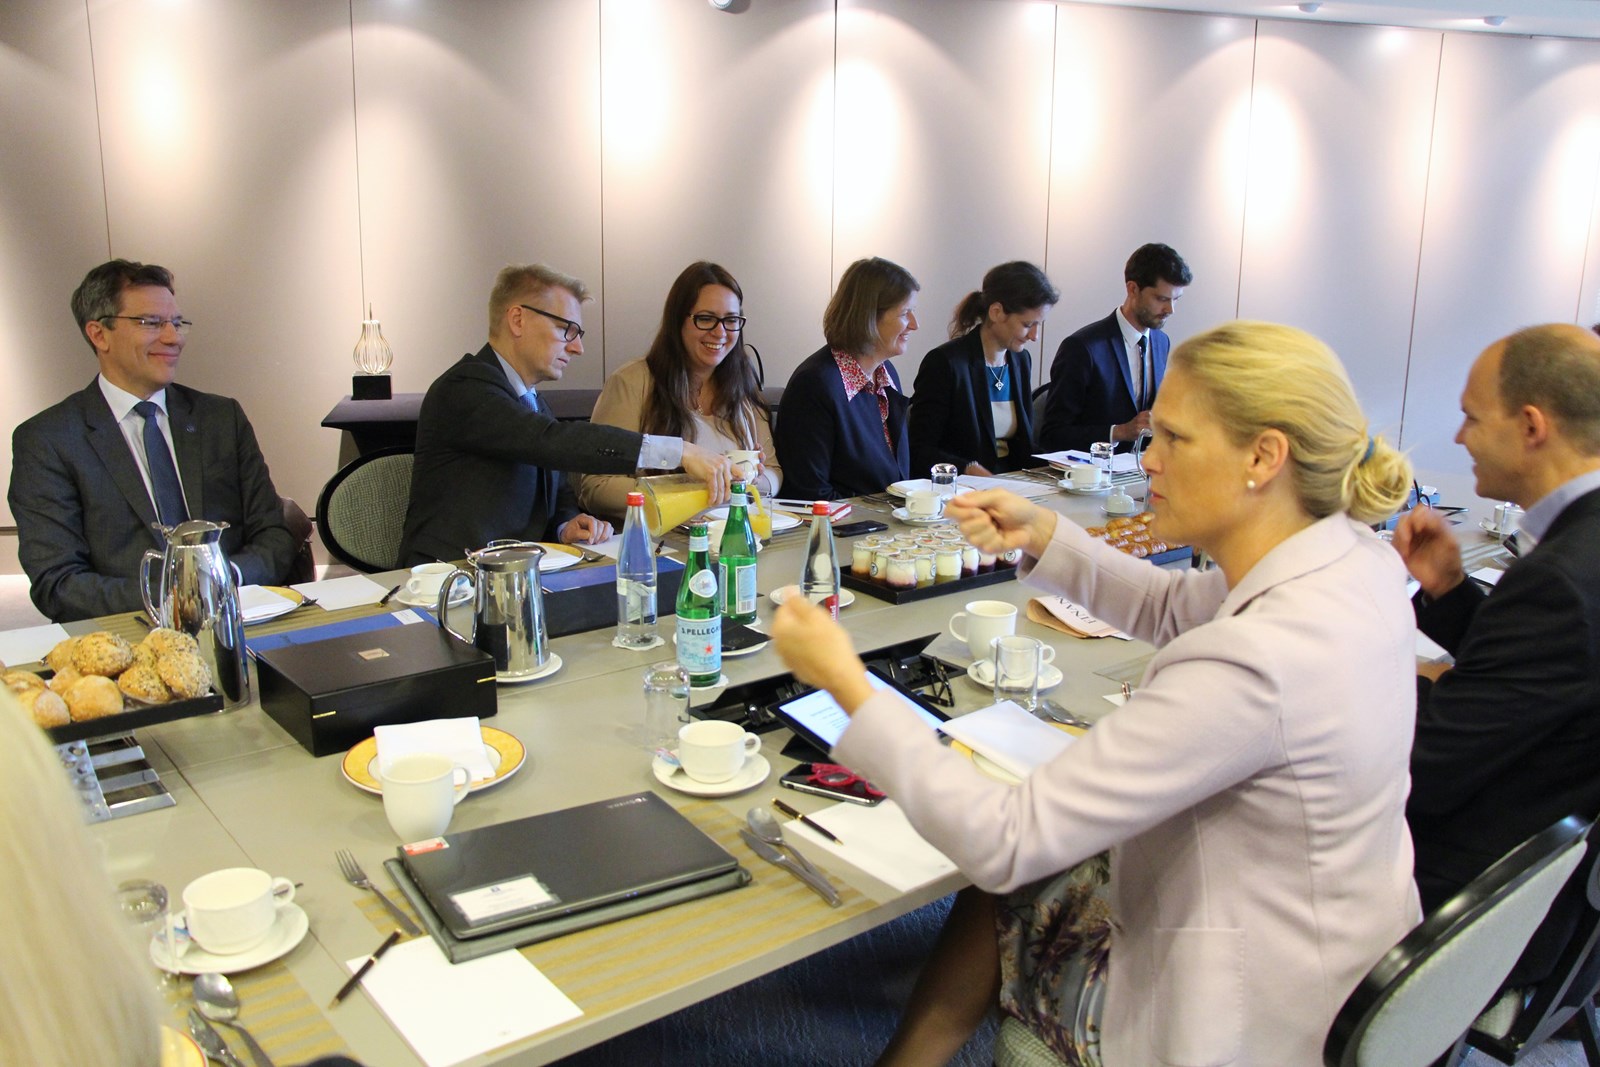 Statssekretær Ingvil Smines Tybring-Gjedde (i forgrunnen) ledet det nordisk-baltiske frokostmøtet i Brussel, der blant annet den finske energiministeren Kimmo Tiilikainen deltok.